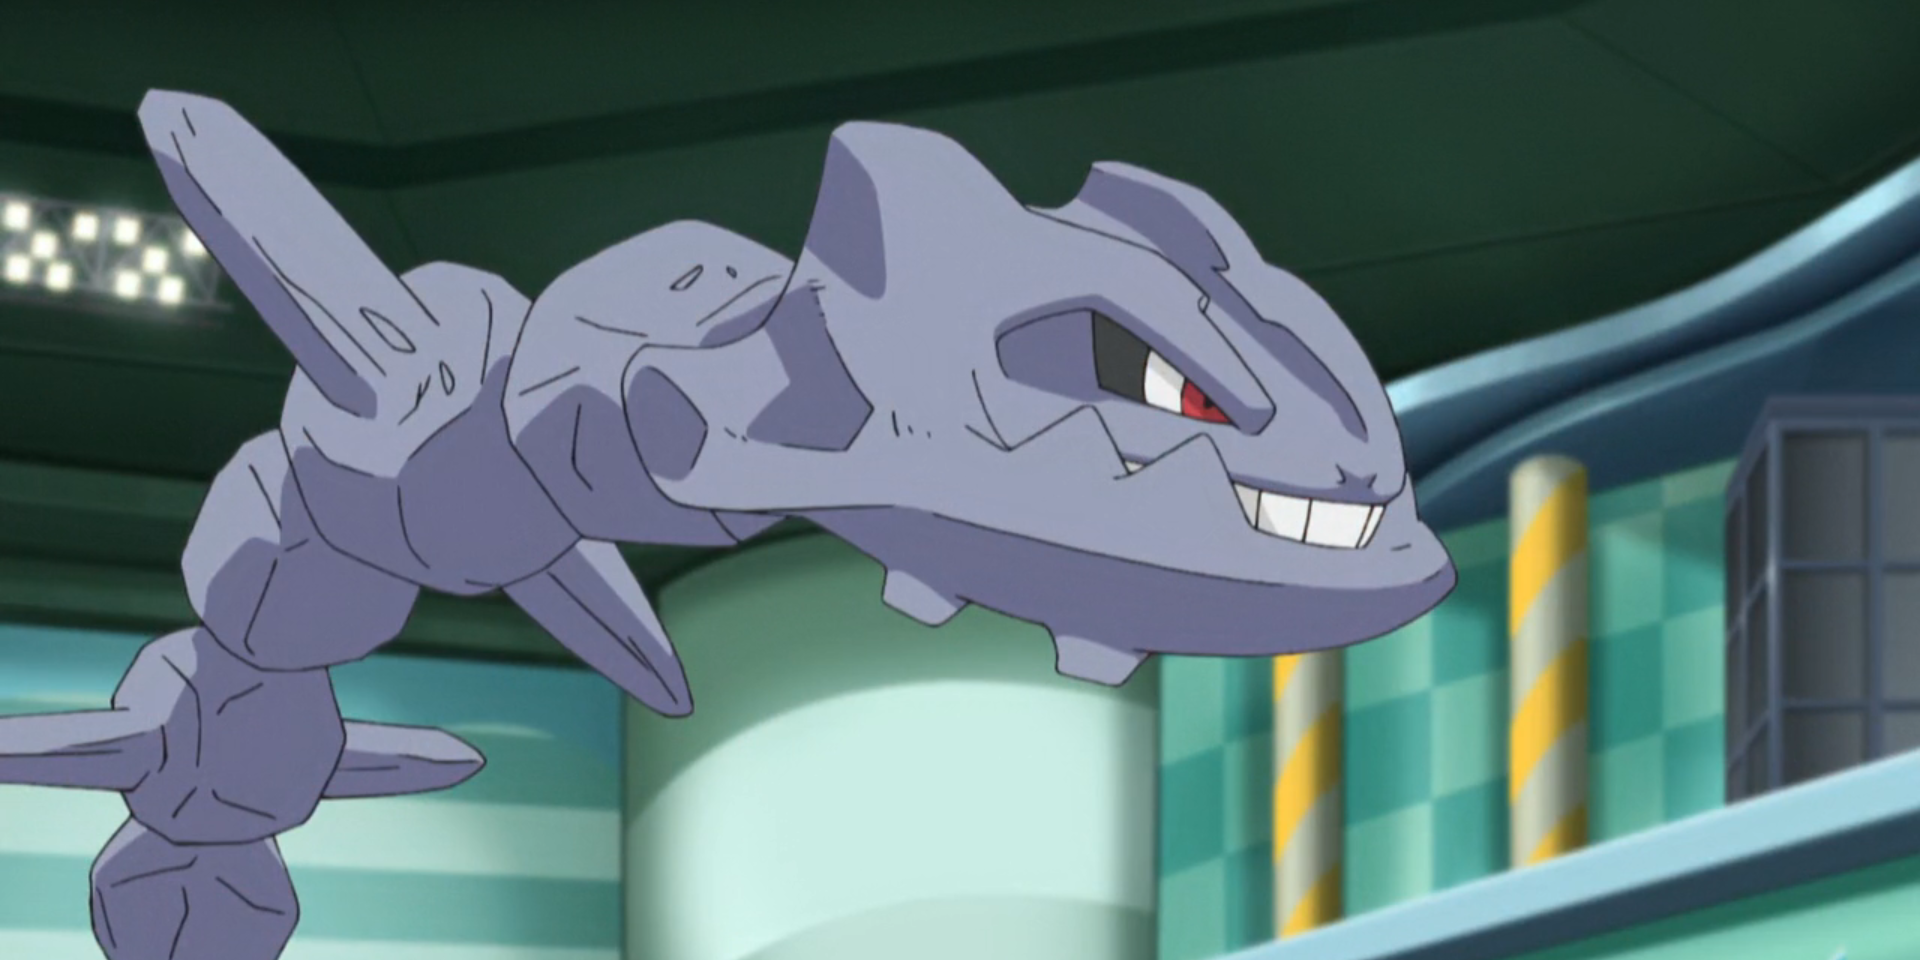 Steelix looking fierce in the Pokémon series